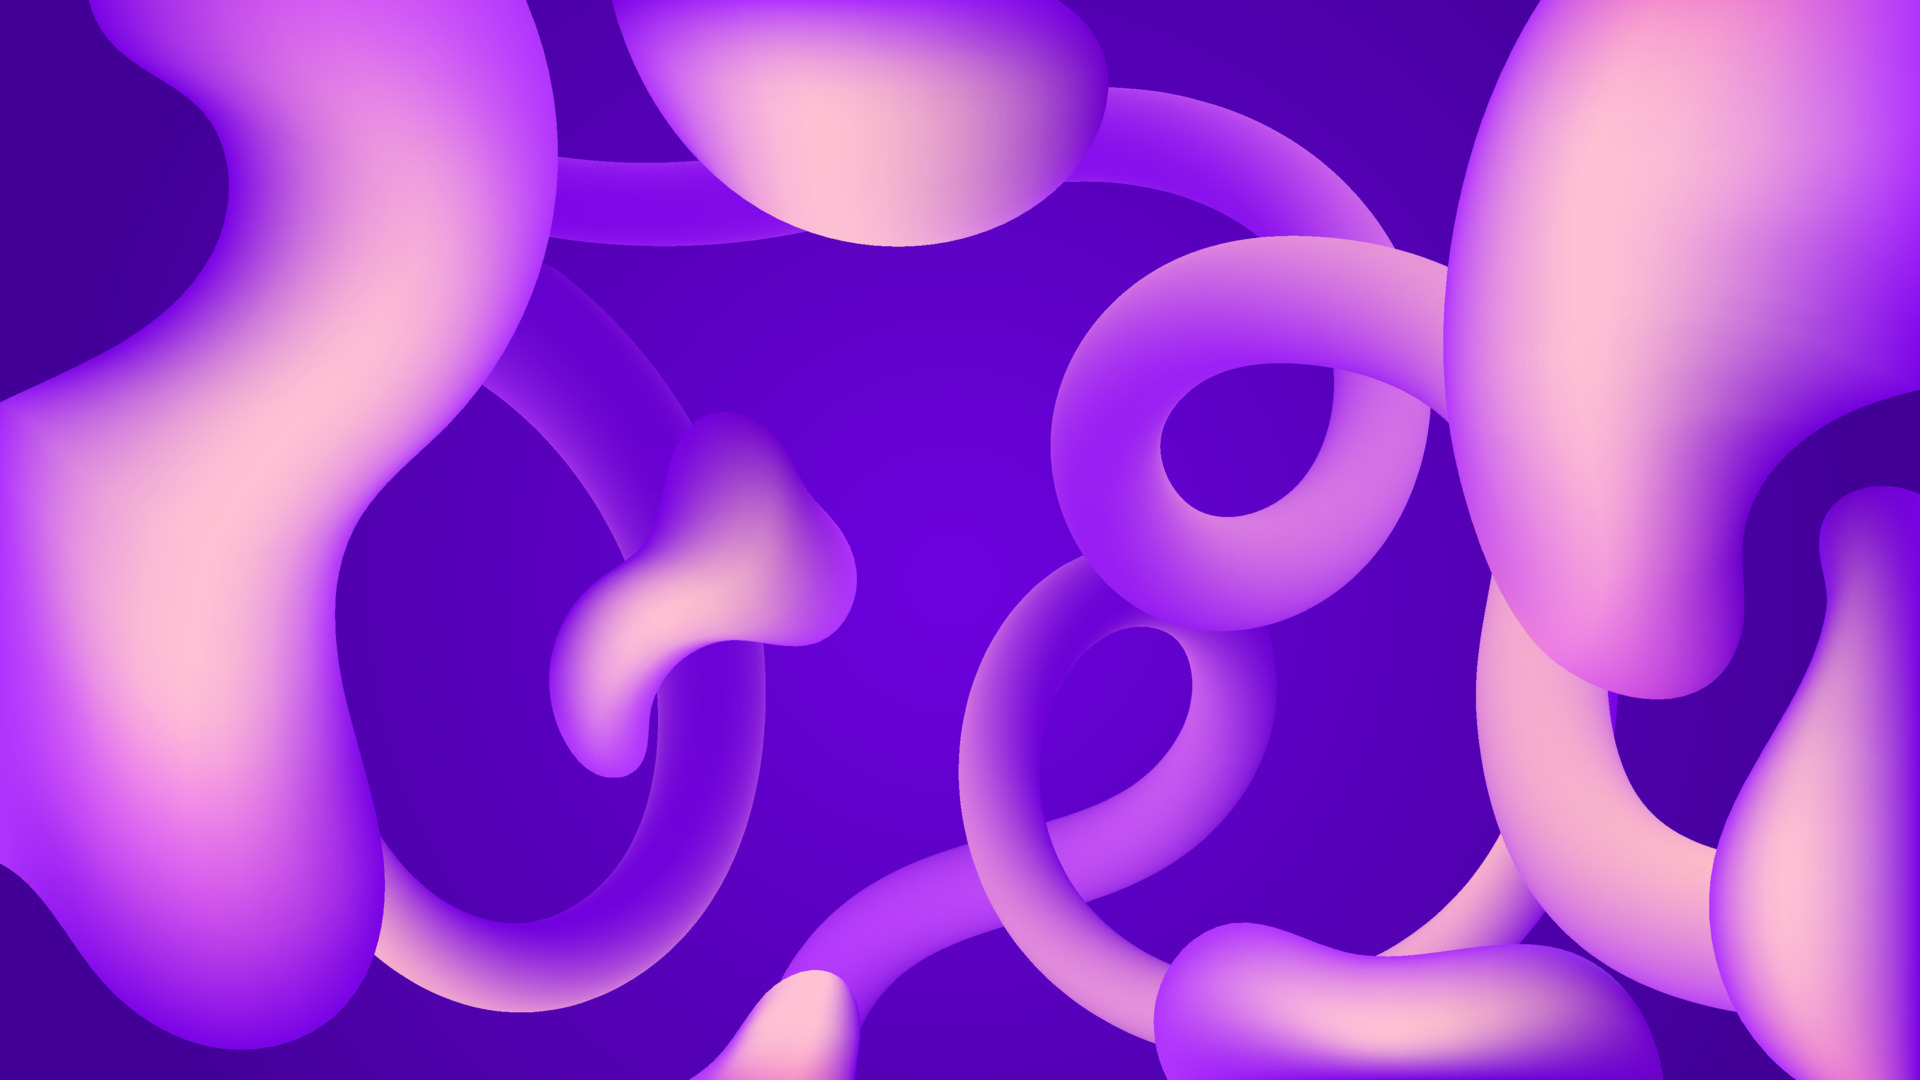 Màu tím, hình học (Purple, geometric): Màu tím, hình học là một lựa chọn tuyệt vời cho một màn hình đẹp và tối ưu hóa trải nghiệm của bạn. Với bộ sưu tập chủ đề này, bạn sẽ tìm thấy những hình ảnh độc đáo và phù hợp với sở thích của mình để tạo ra một không gian làm việc hoặc giải trí tối ưu.